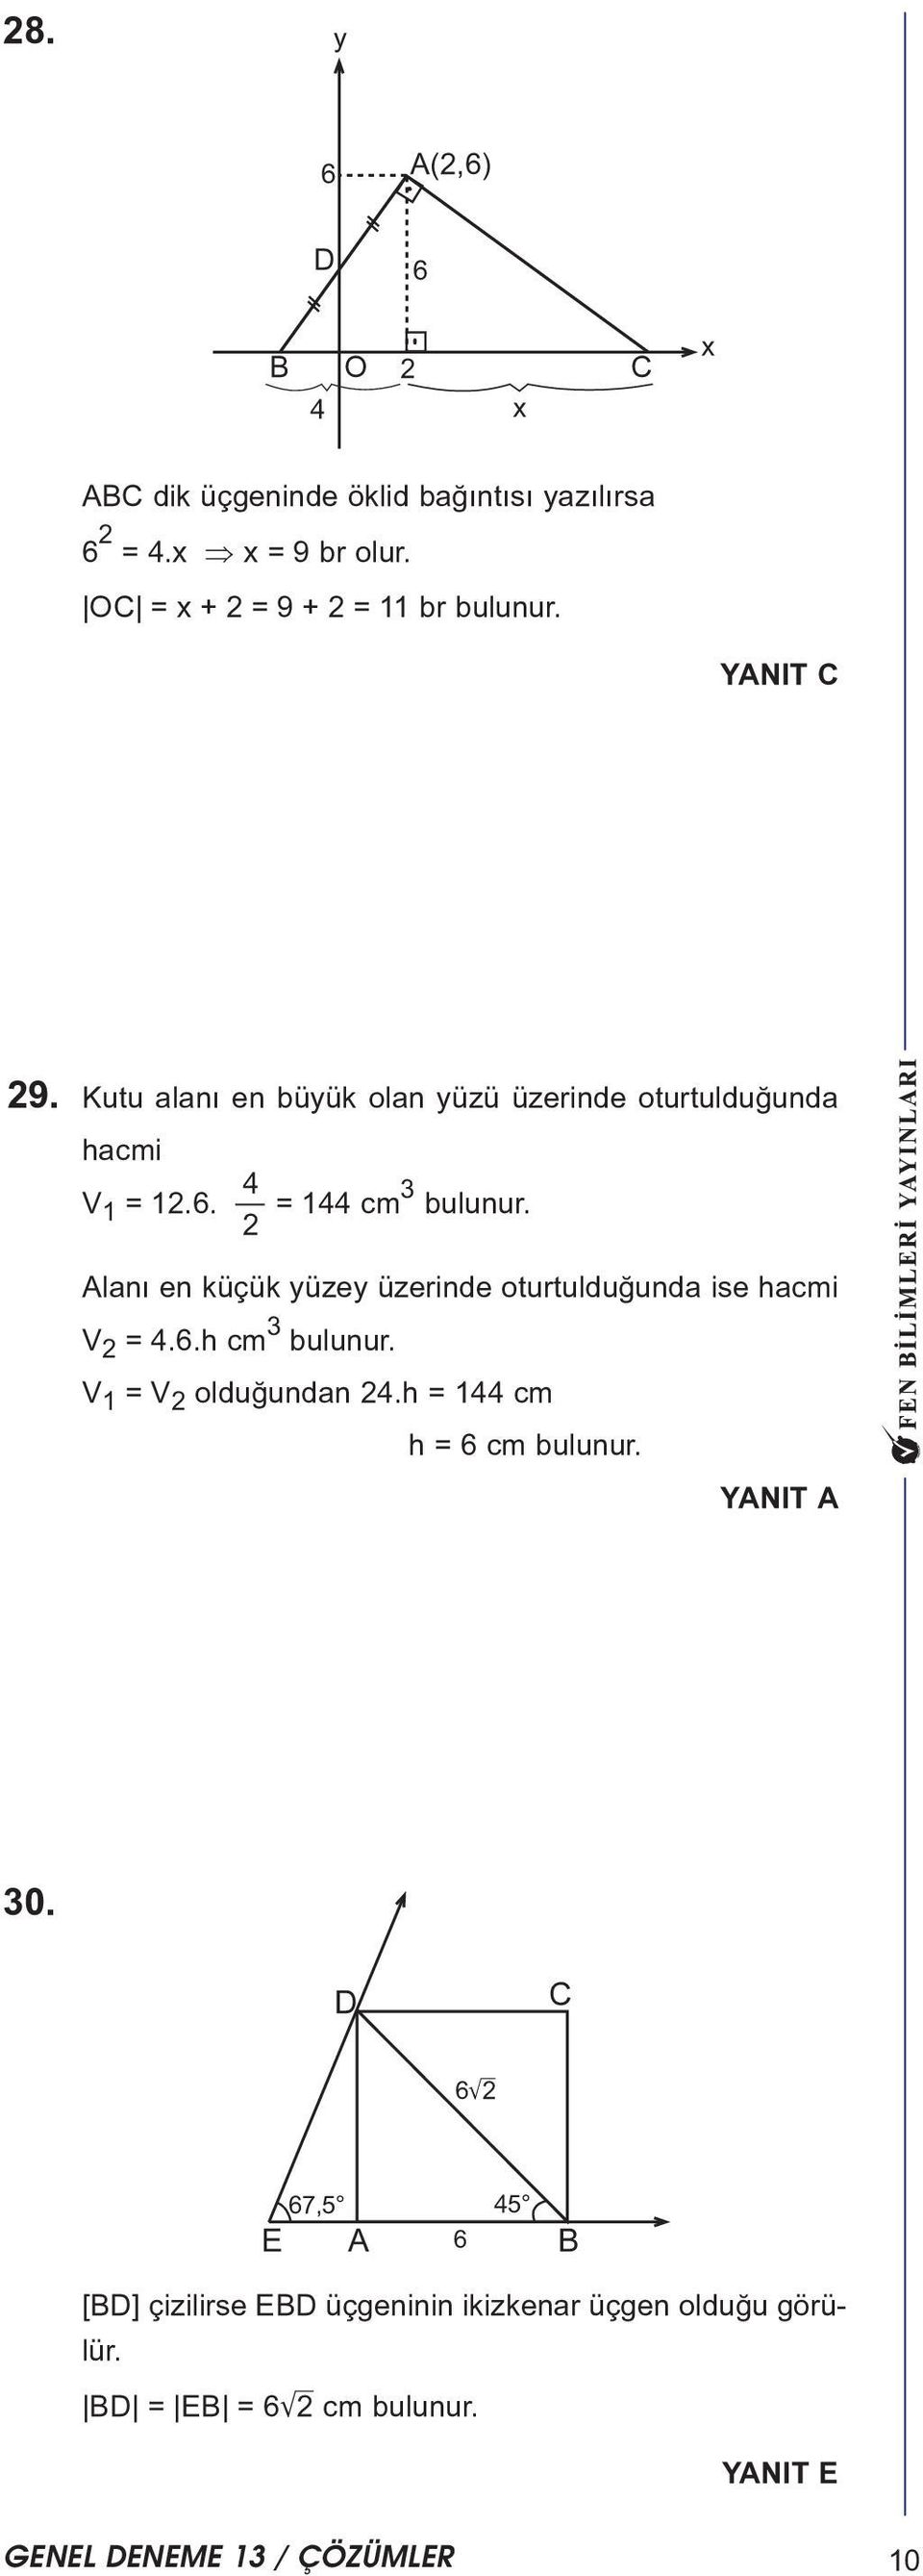 = 44 cm 3 bulunur. laný en küçük yüzey üzerinde oturtulduðunda ise hacmi V = 4.6.h cm 3 bulunur.